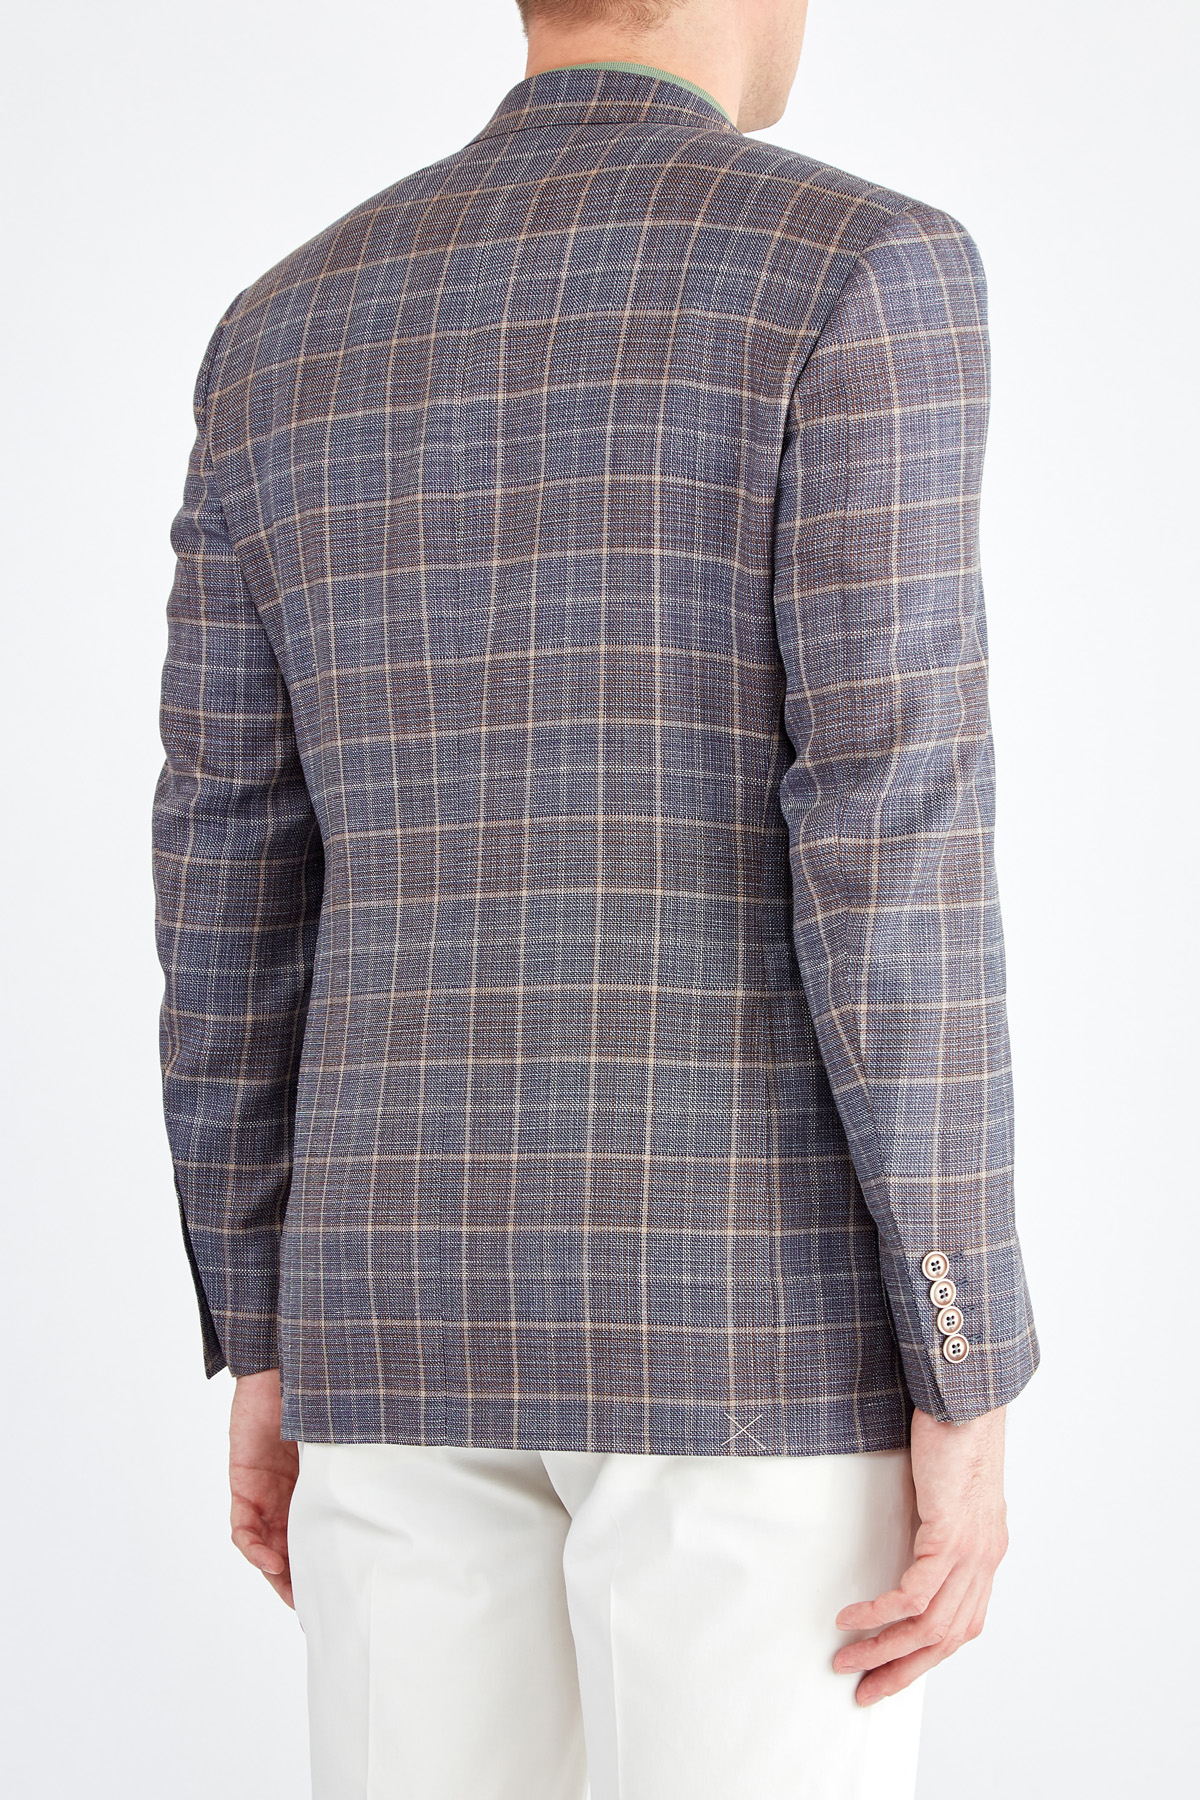 Пиджак из фактурной шерстяной ткани с волокнами льна CANALI, цвет мульти, размер 50;52;54;56 - фото 4